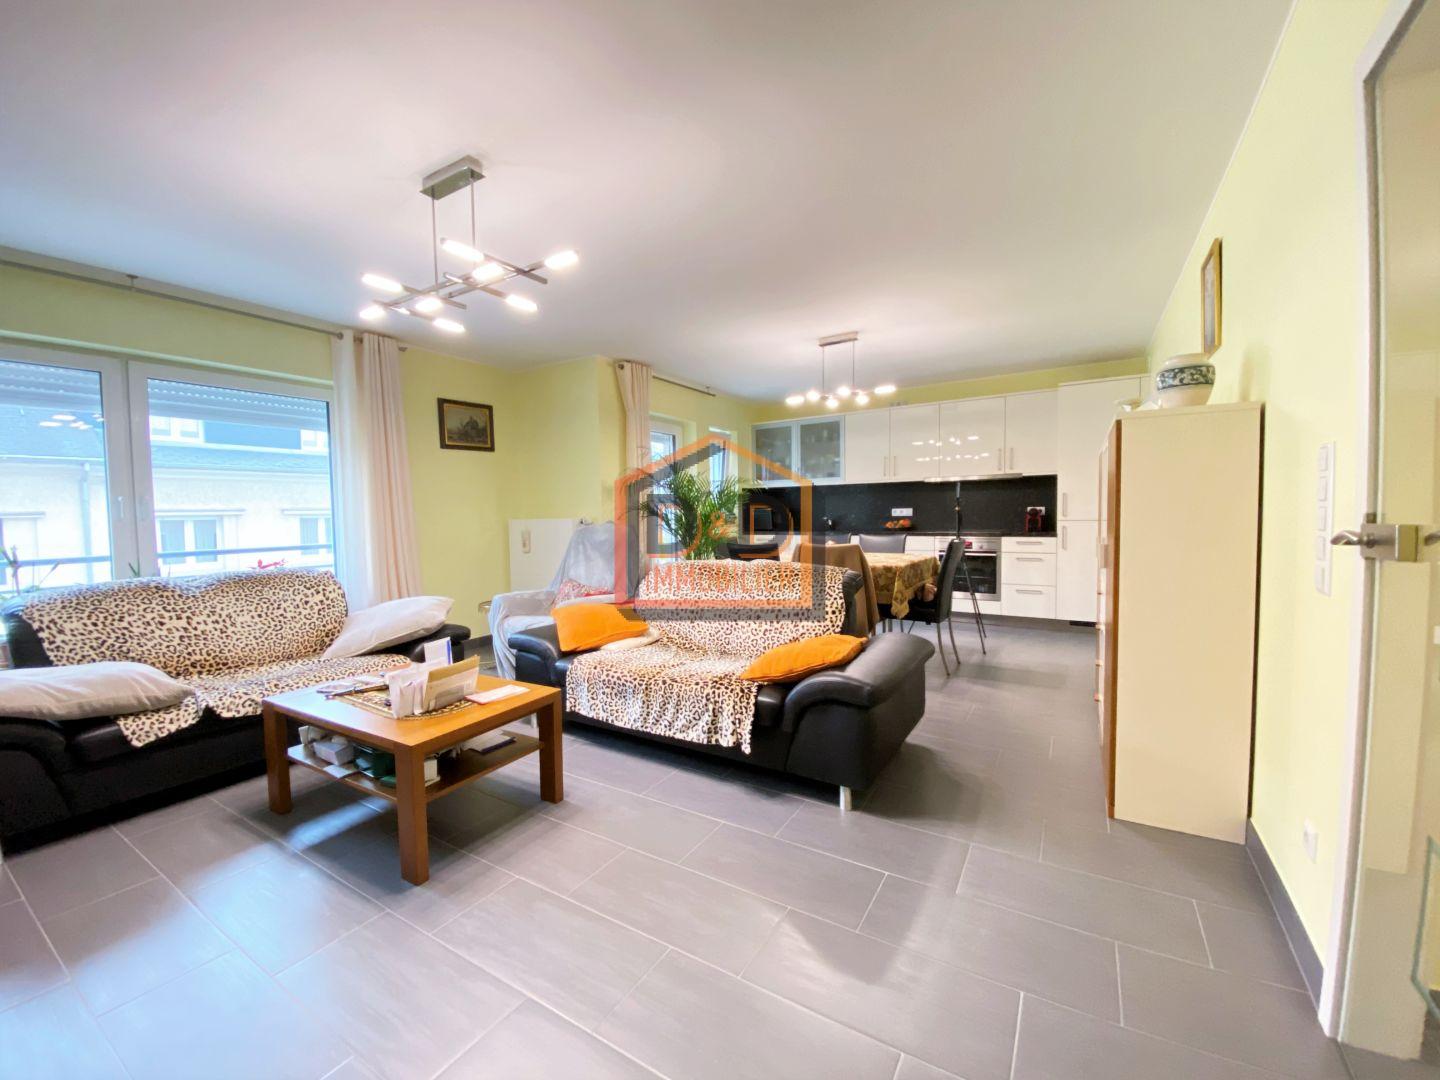 Appartement à Luxembourg-Bonnevoie, 81 m², 2 chambres, 2 000 €/mois